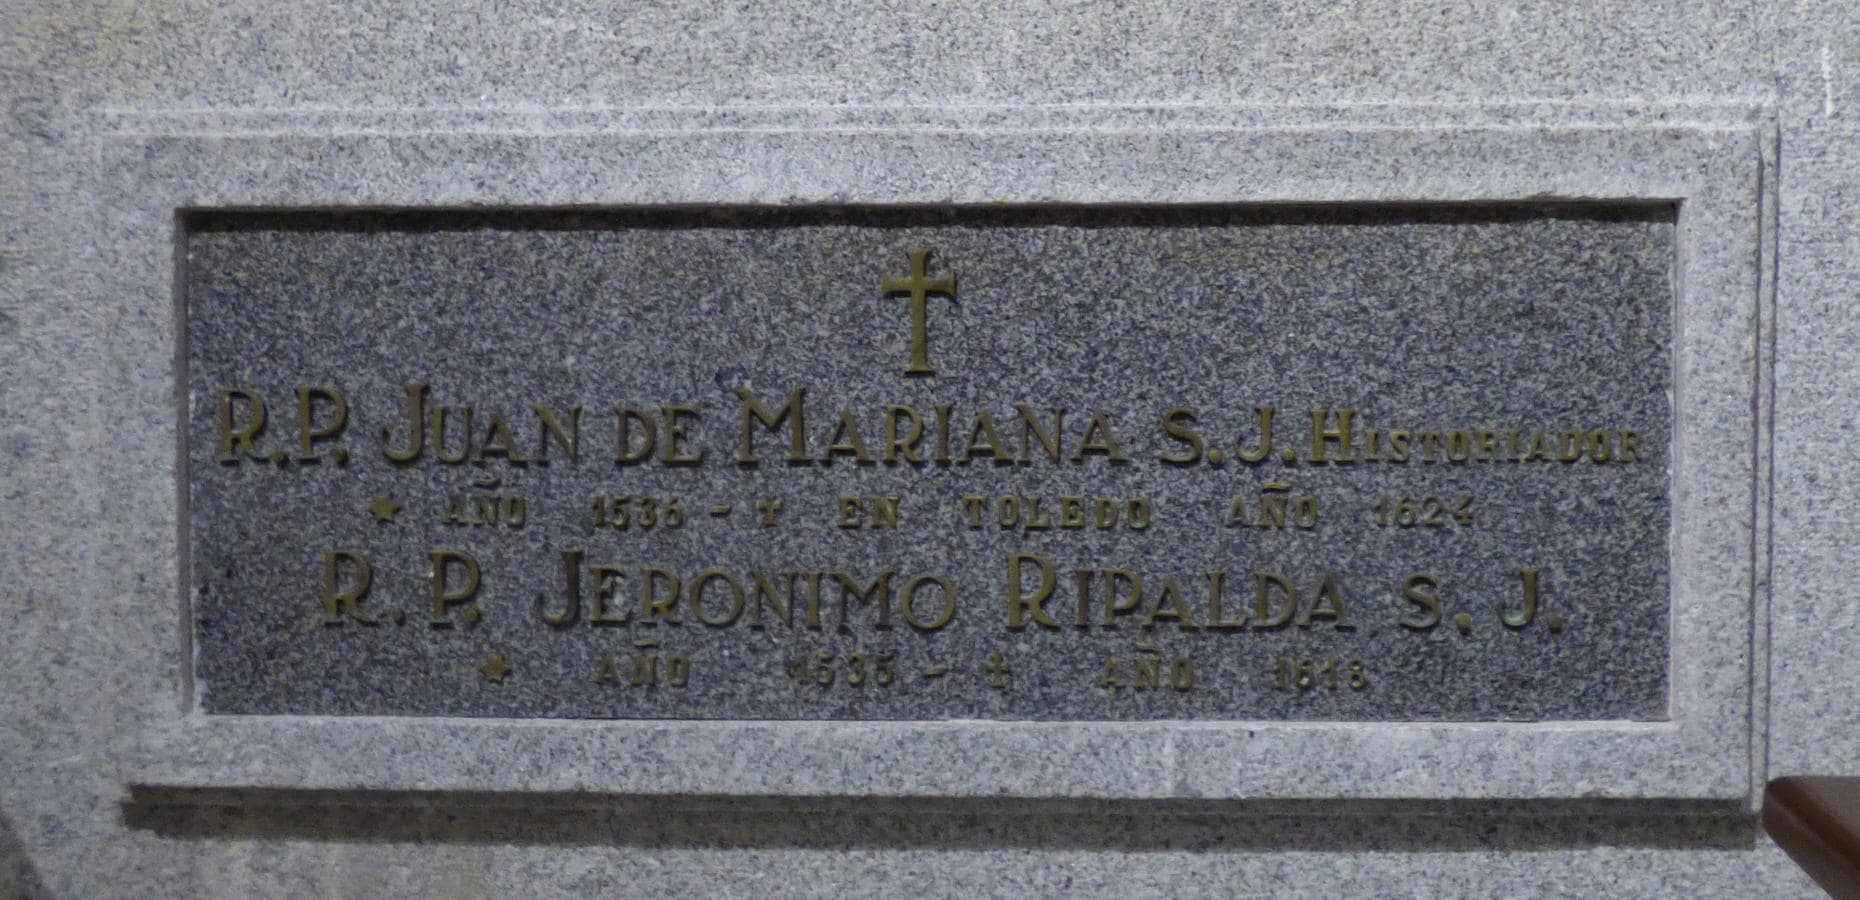 Lápida de los padres jesuitas Mariana y Ripalda en el Ochavo del templo de San Ildefonso de Toledo. Foto Rafael del Cerro. 